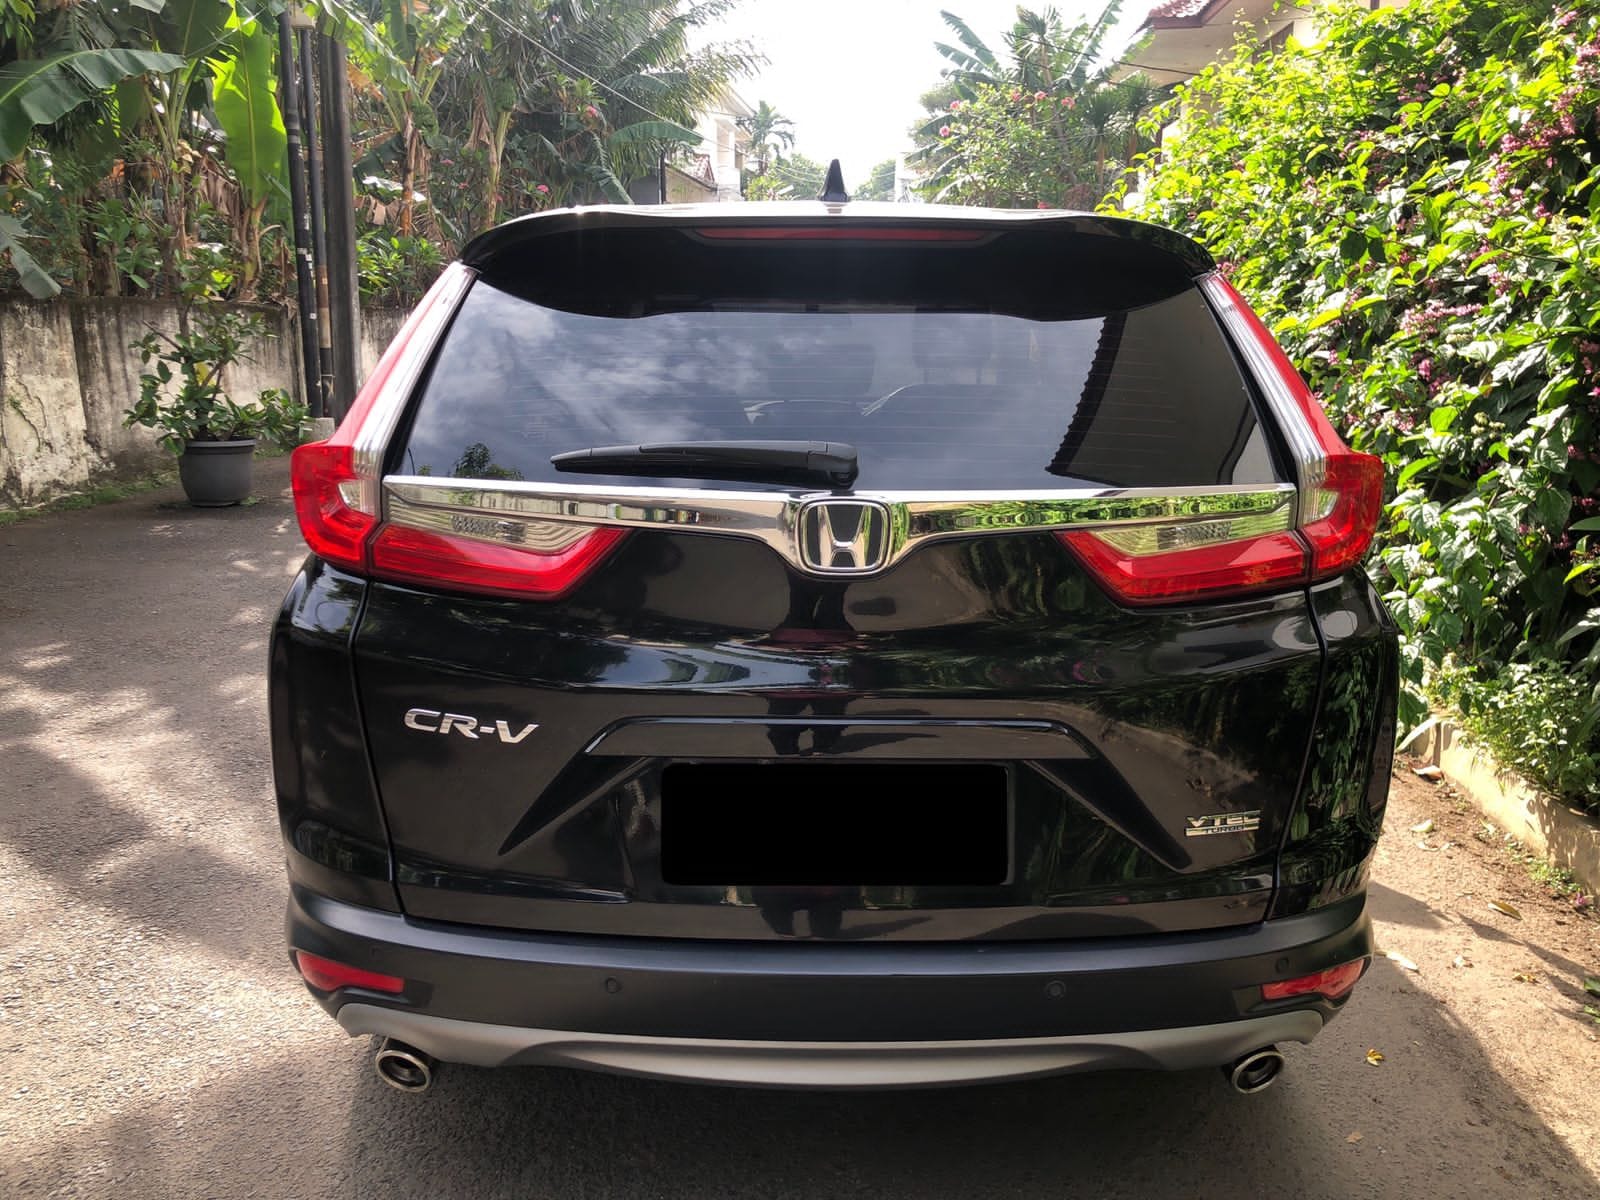 Dijual 2019 Honda CRV Standar 1.5L AT Standar 1.5L AT Bekas